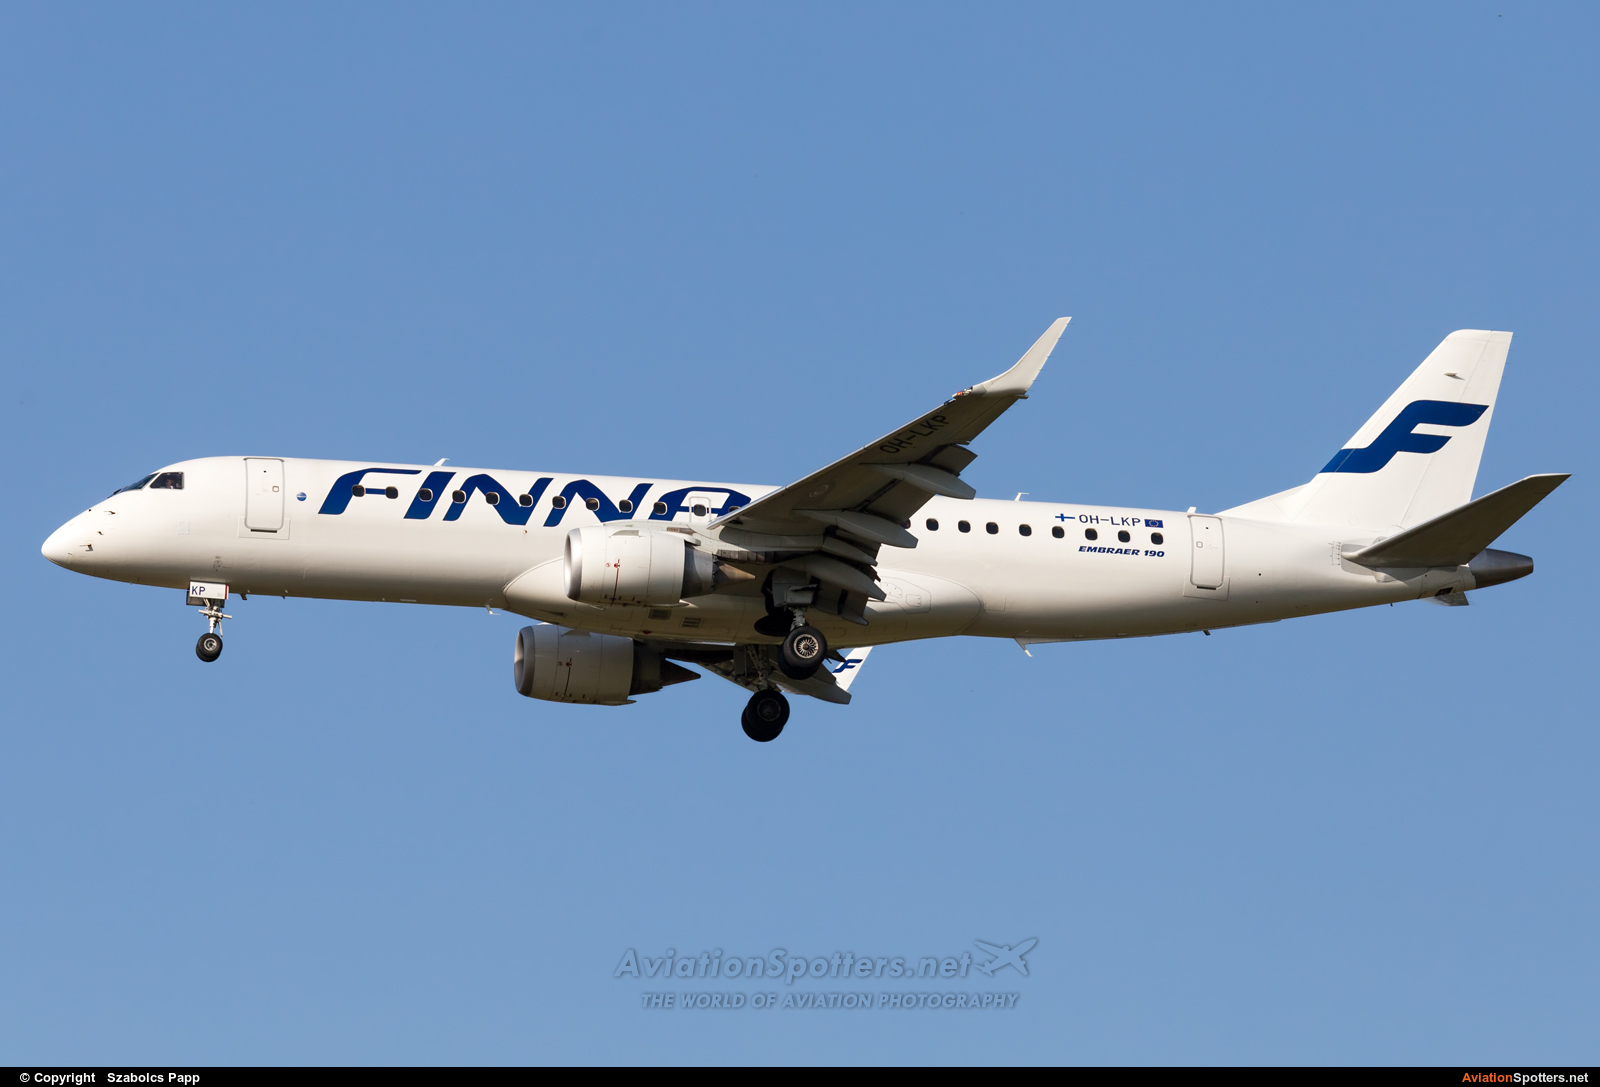 Finnair  -  190  (OH-LKP) By Szabolcs Papp (mr.szabi)